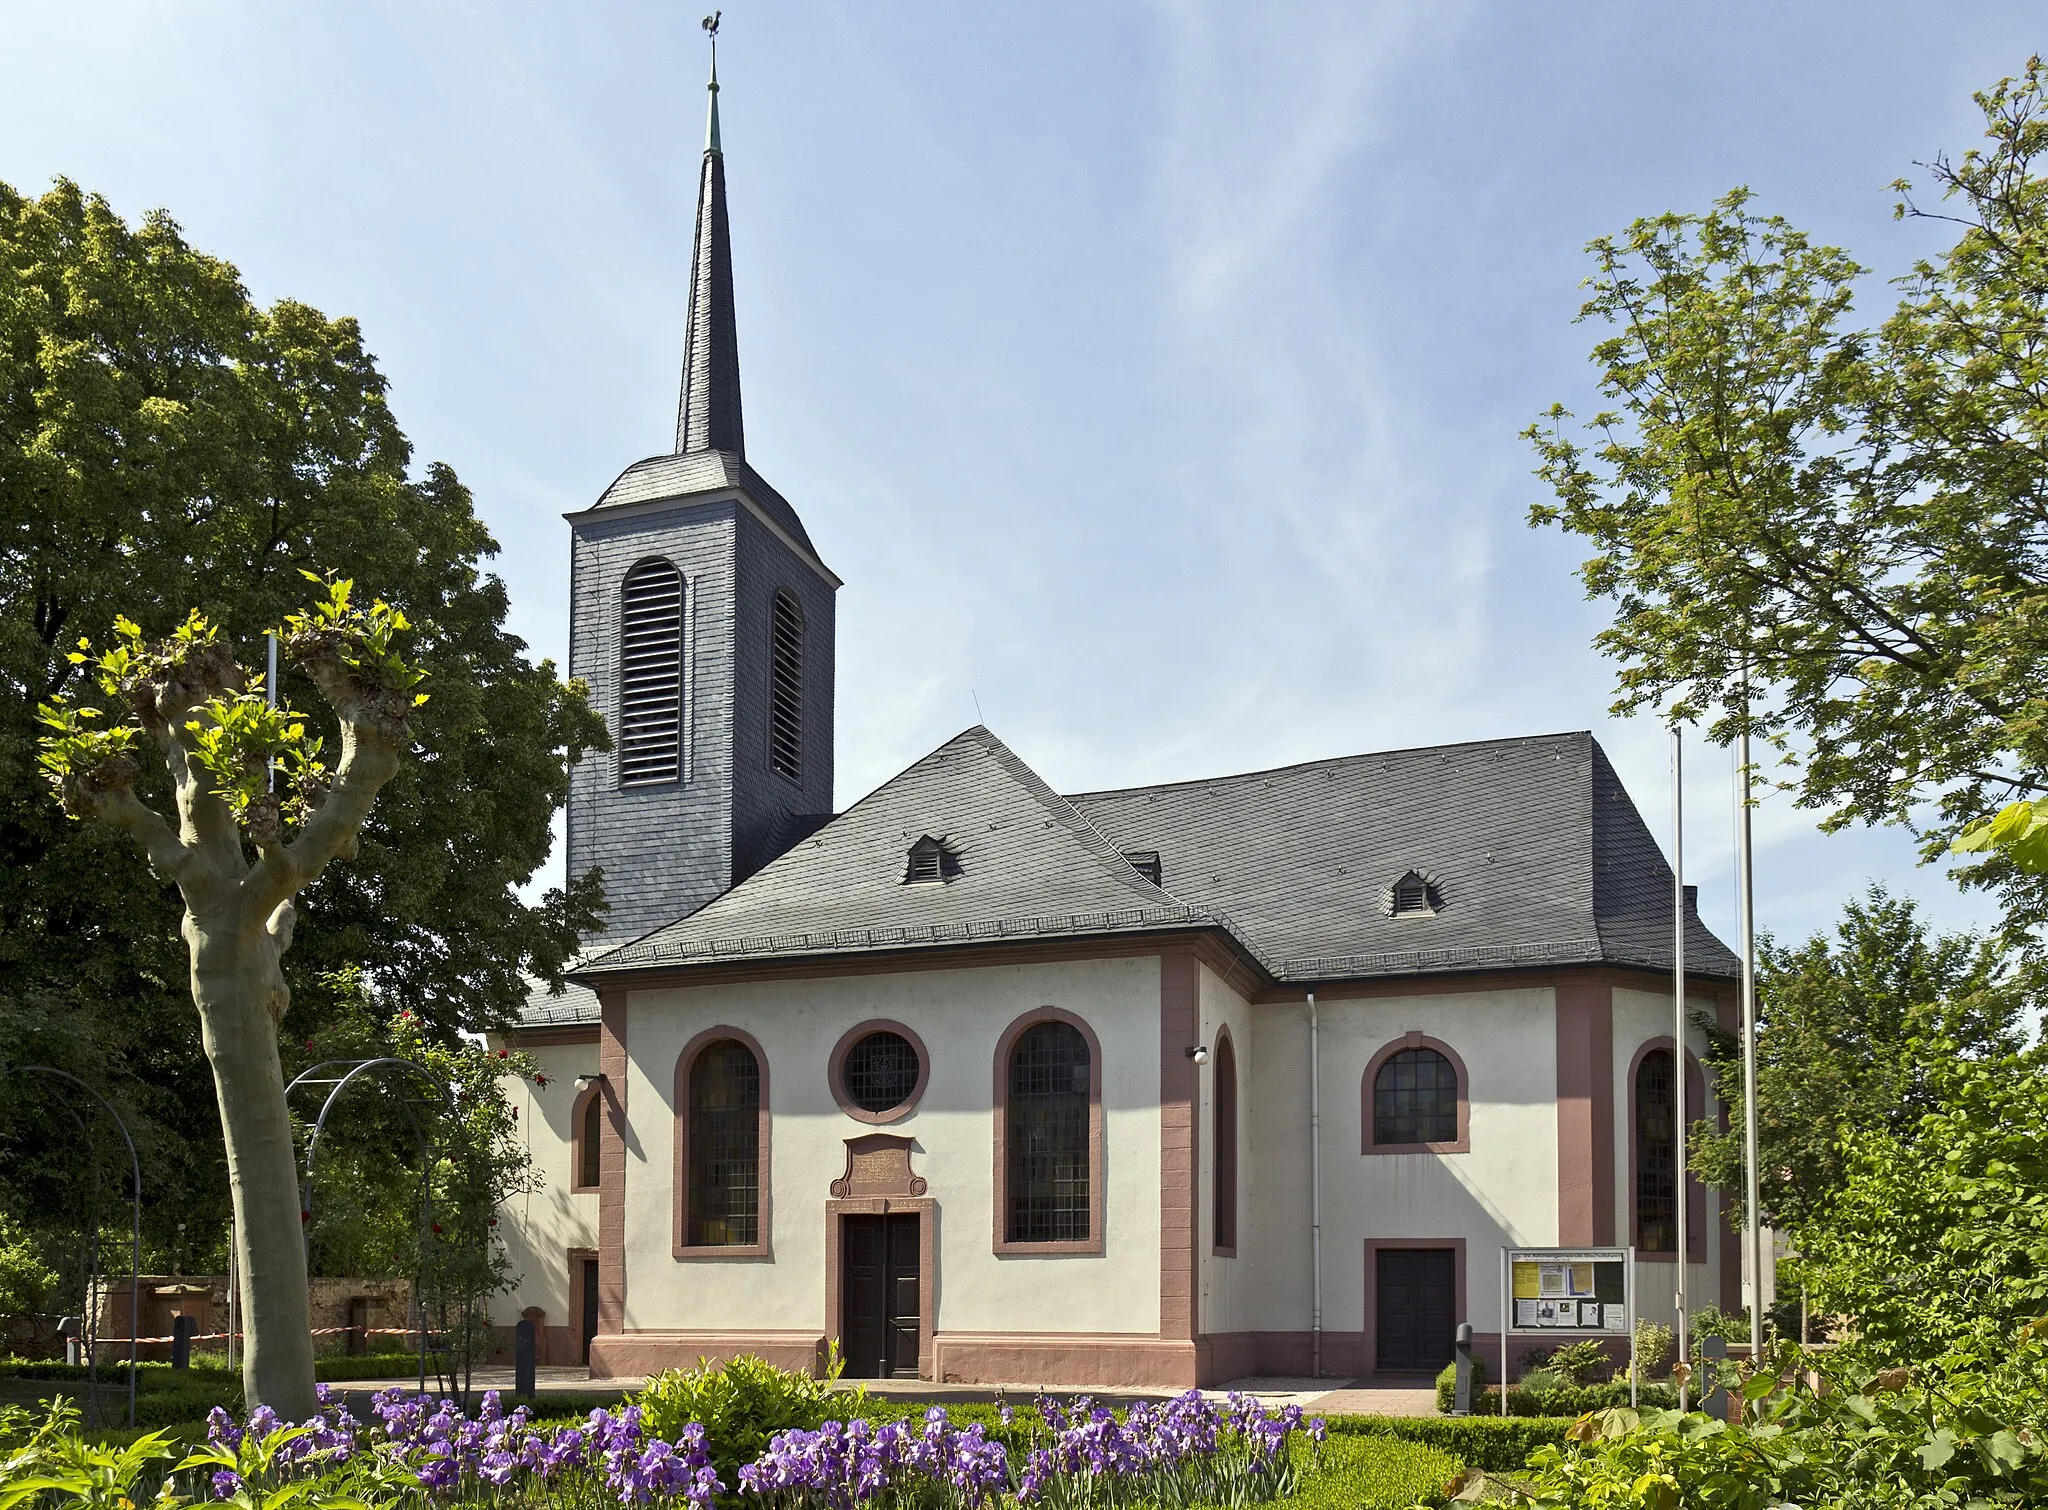 Image of Bischofsheim